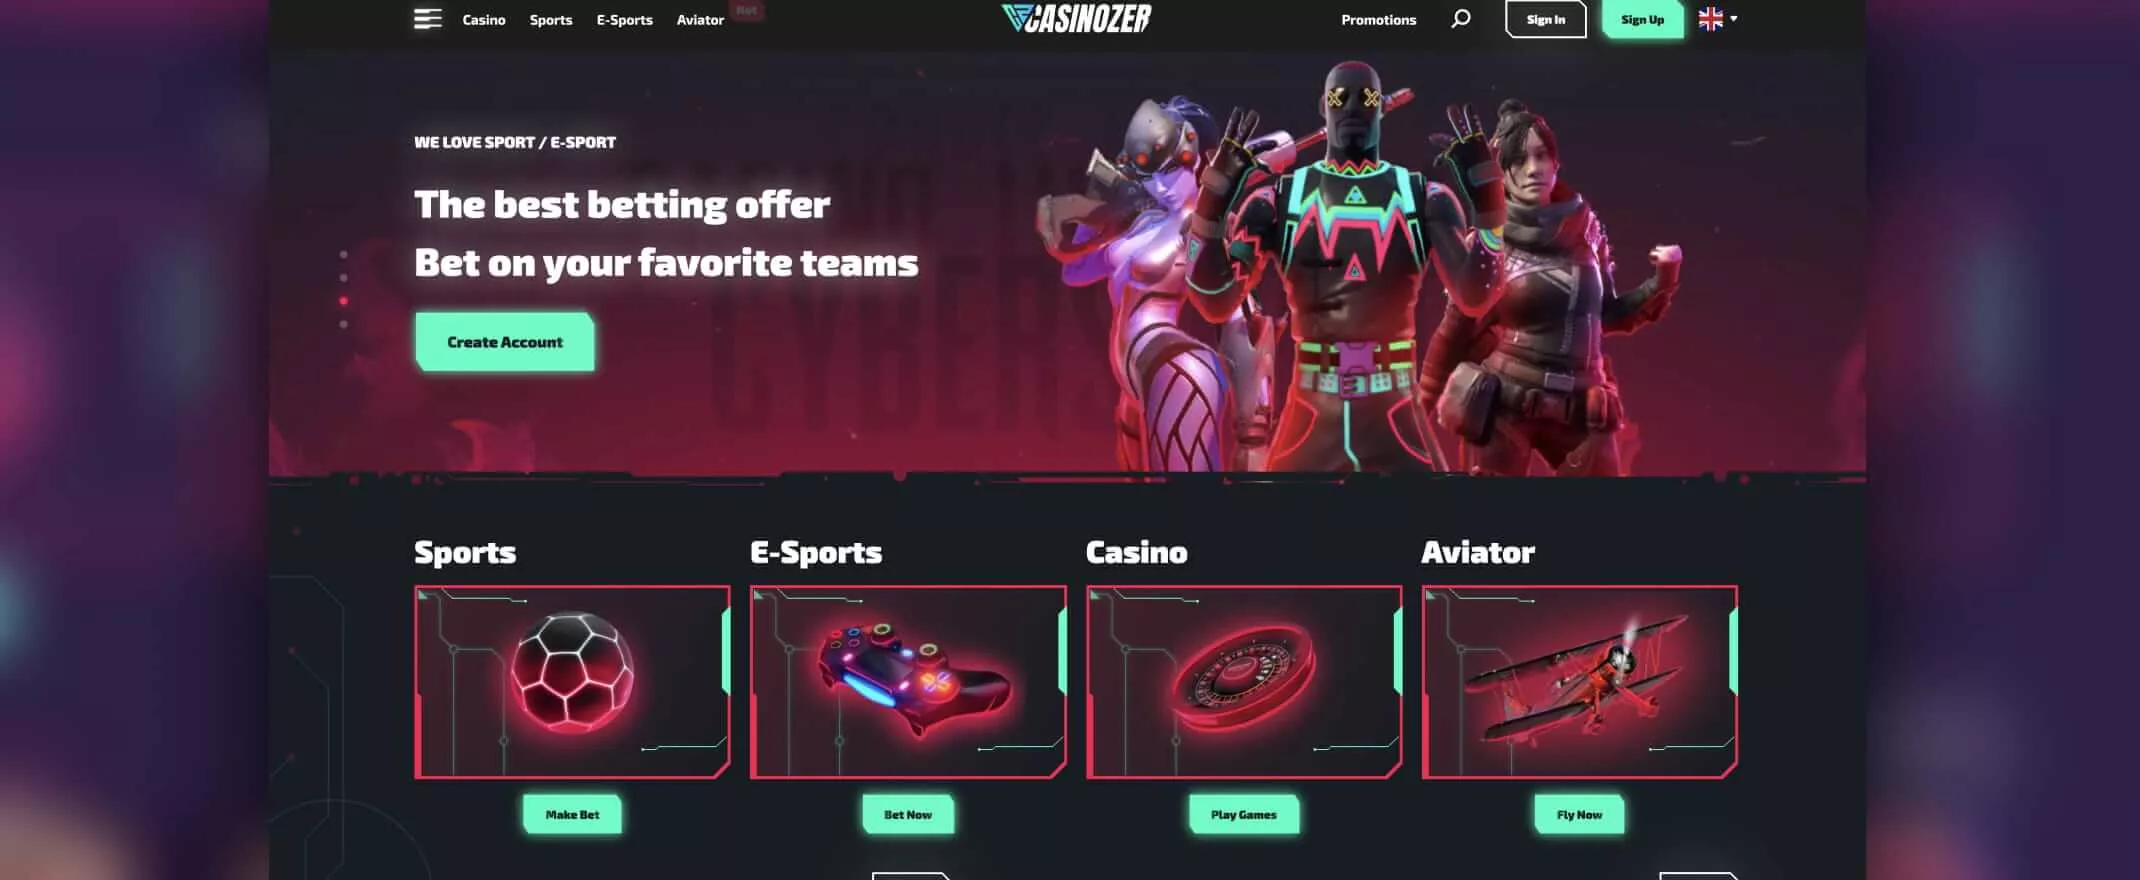 Casinozer homepage screenshot